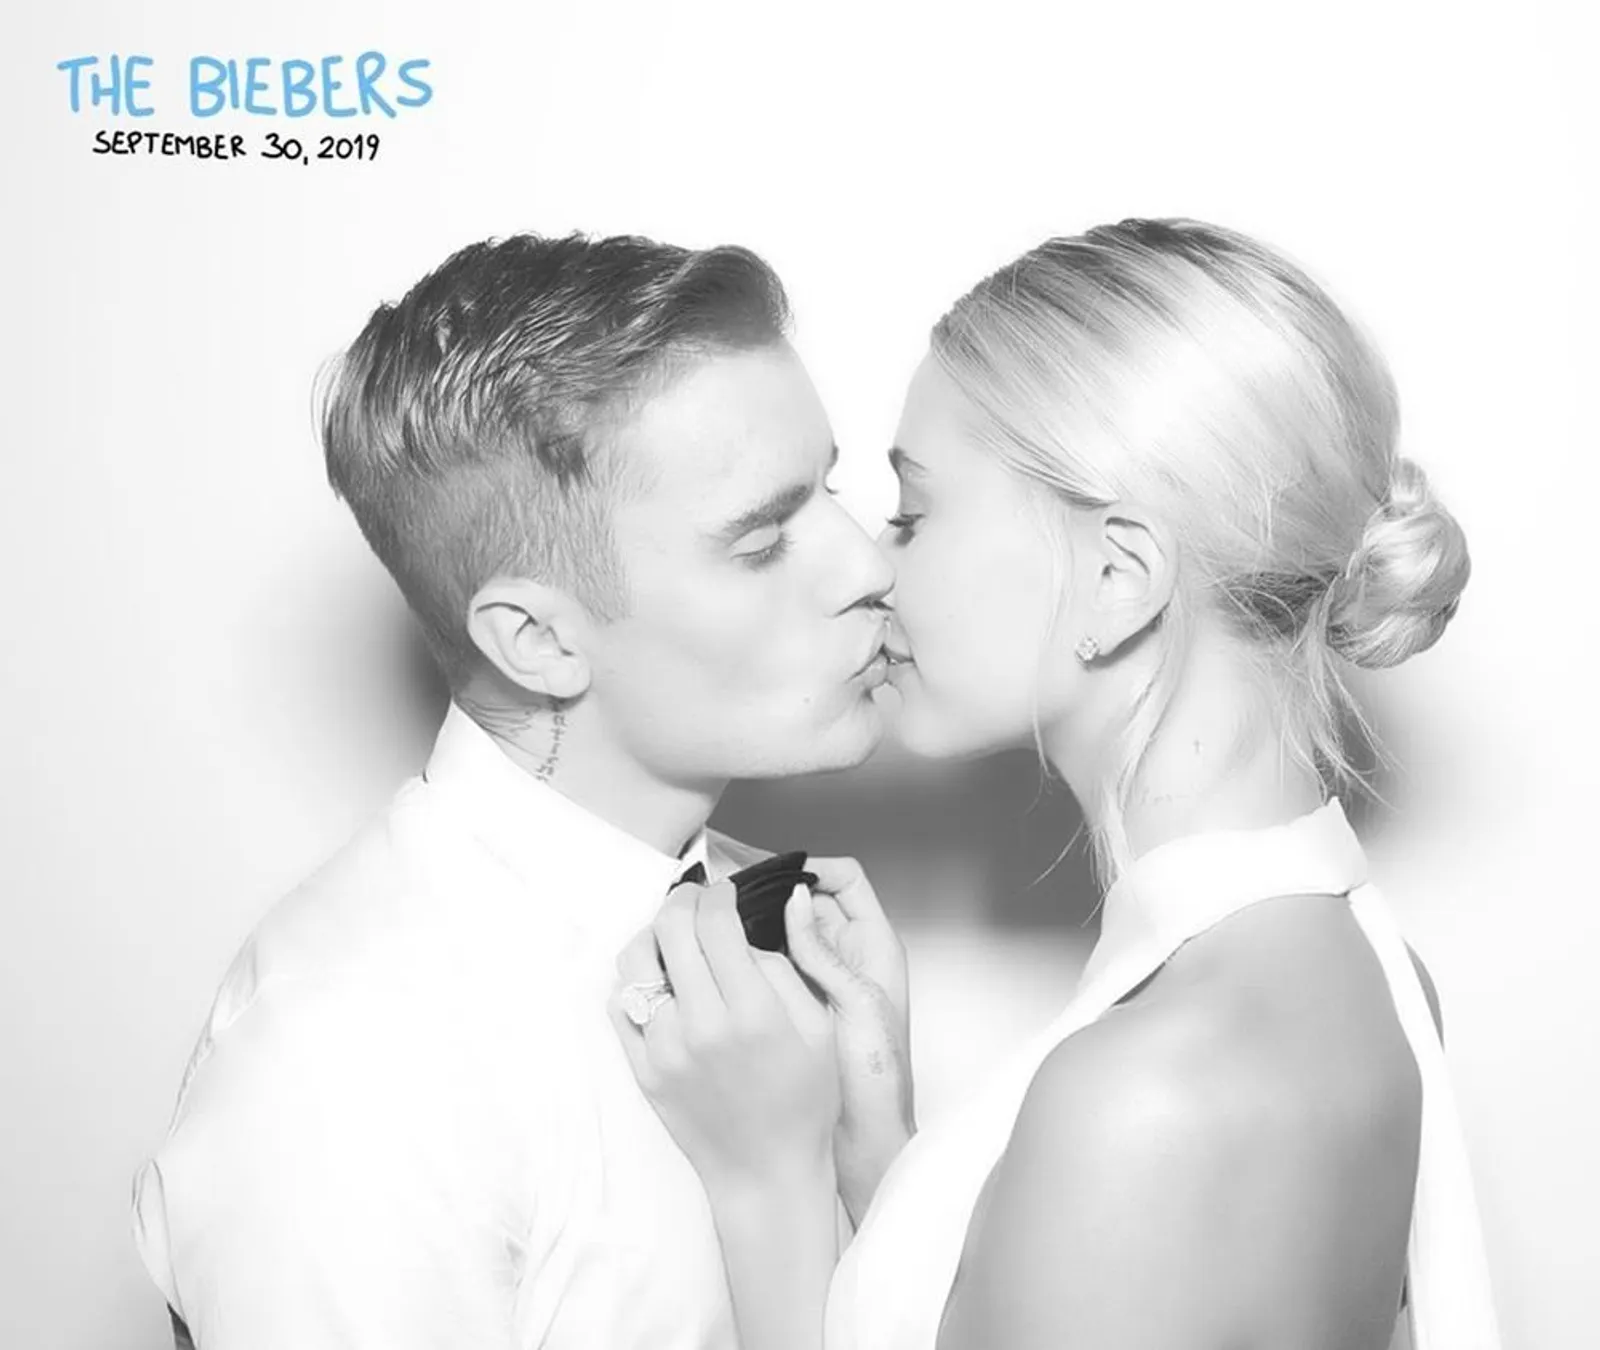 Rilis Foto Pernikahan, Ini Alasan Justin & Hailey Bieber Menikah Lagi